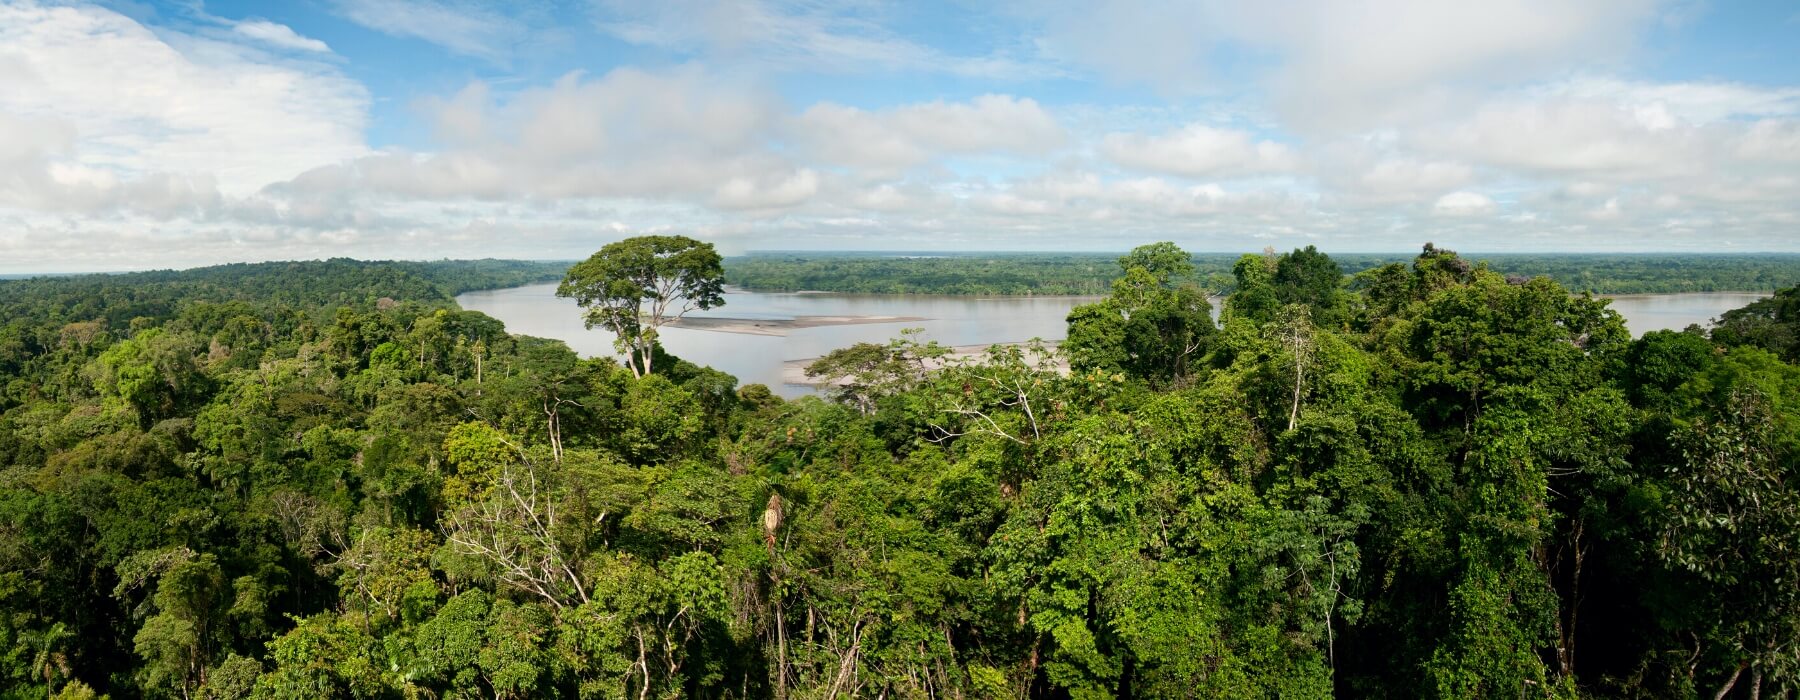 DIE ATTRAKTIVSTEN REISEZIELE IM PERUANISCHEN AMAZONAS